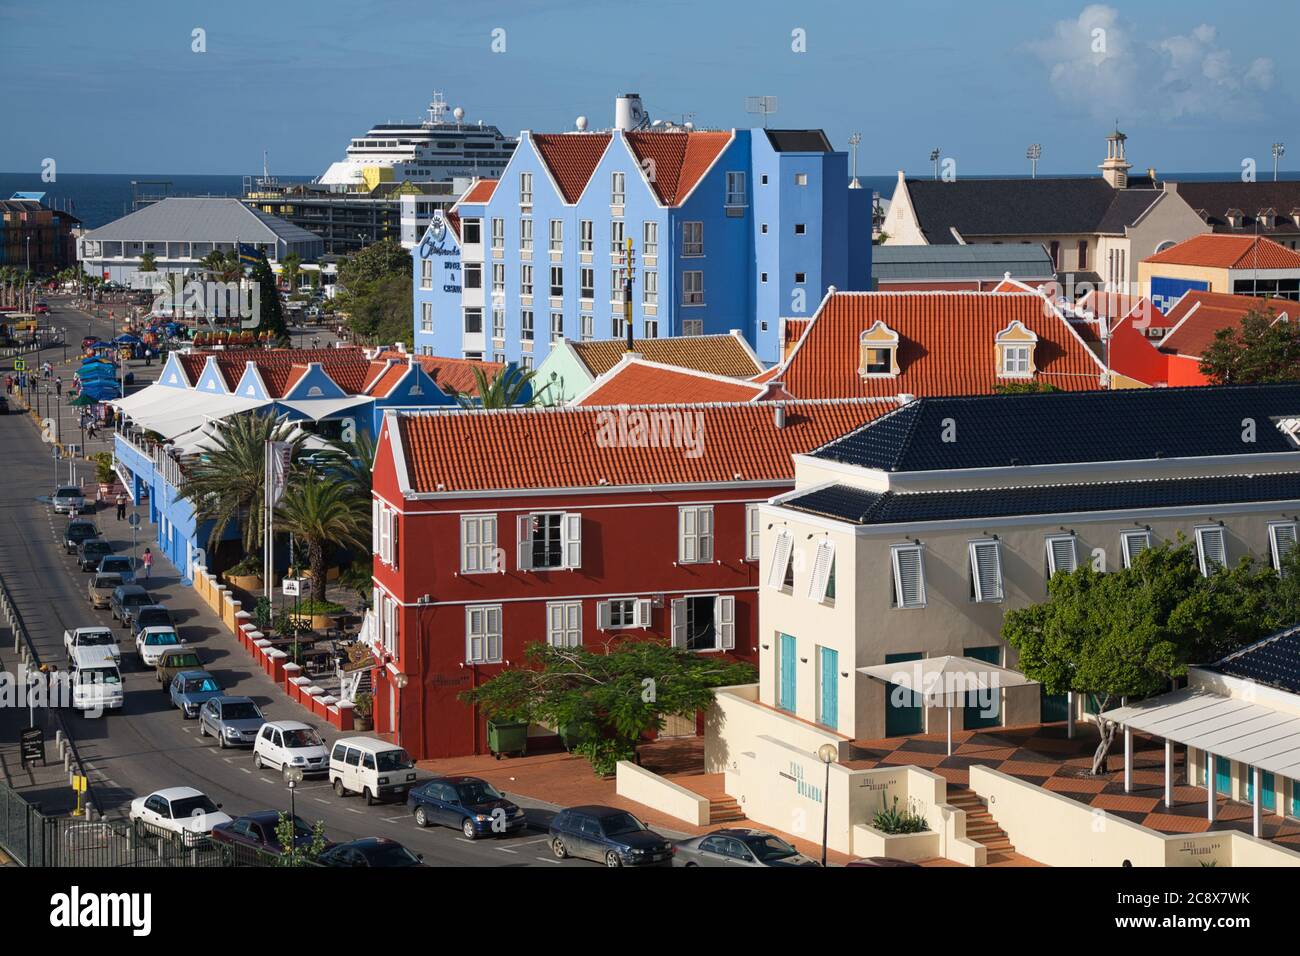 Bunte Architektur und Gebäude in Willemstad, Curacao, der Karibik Stockfoto